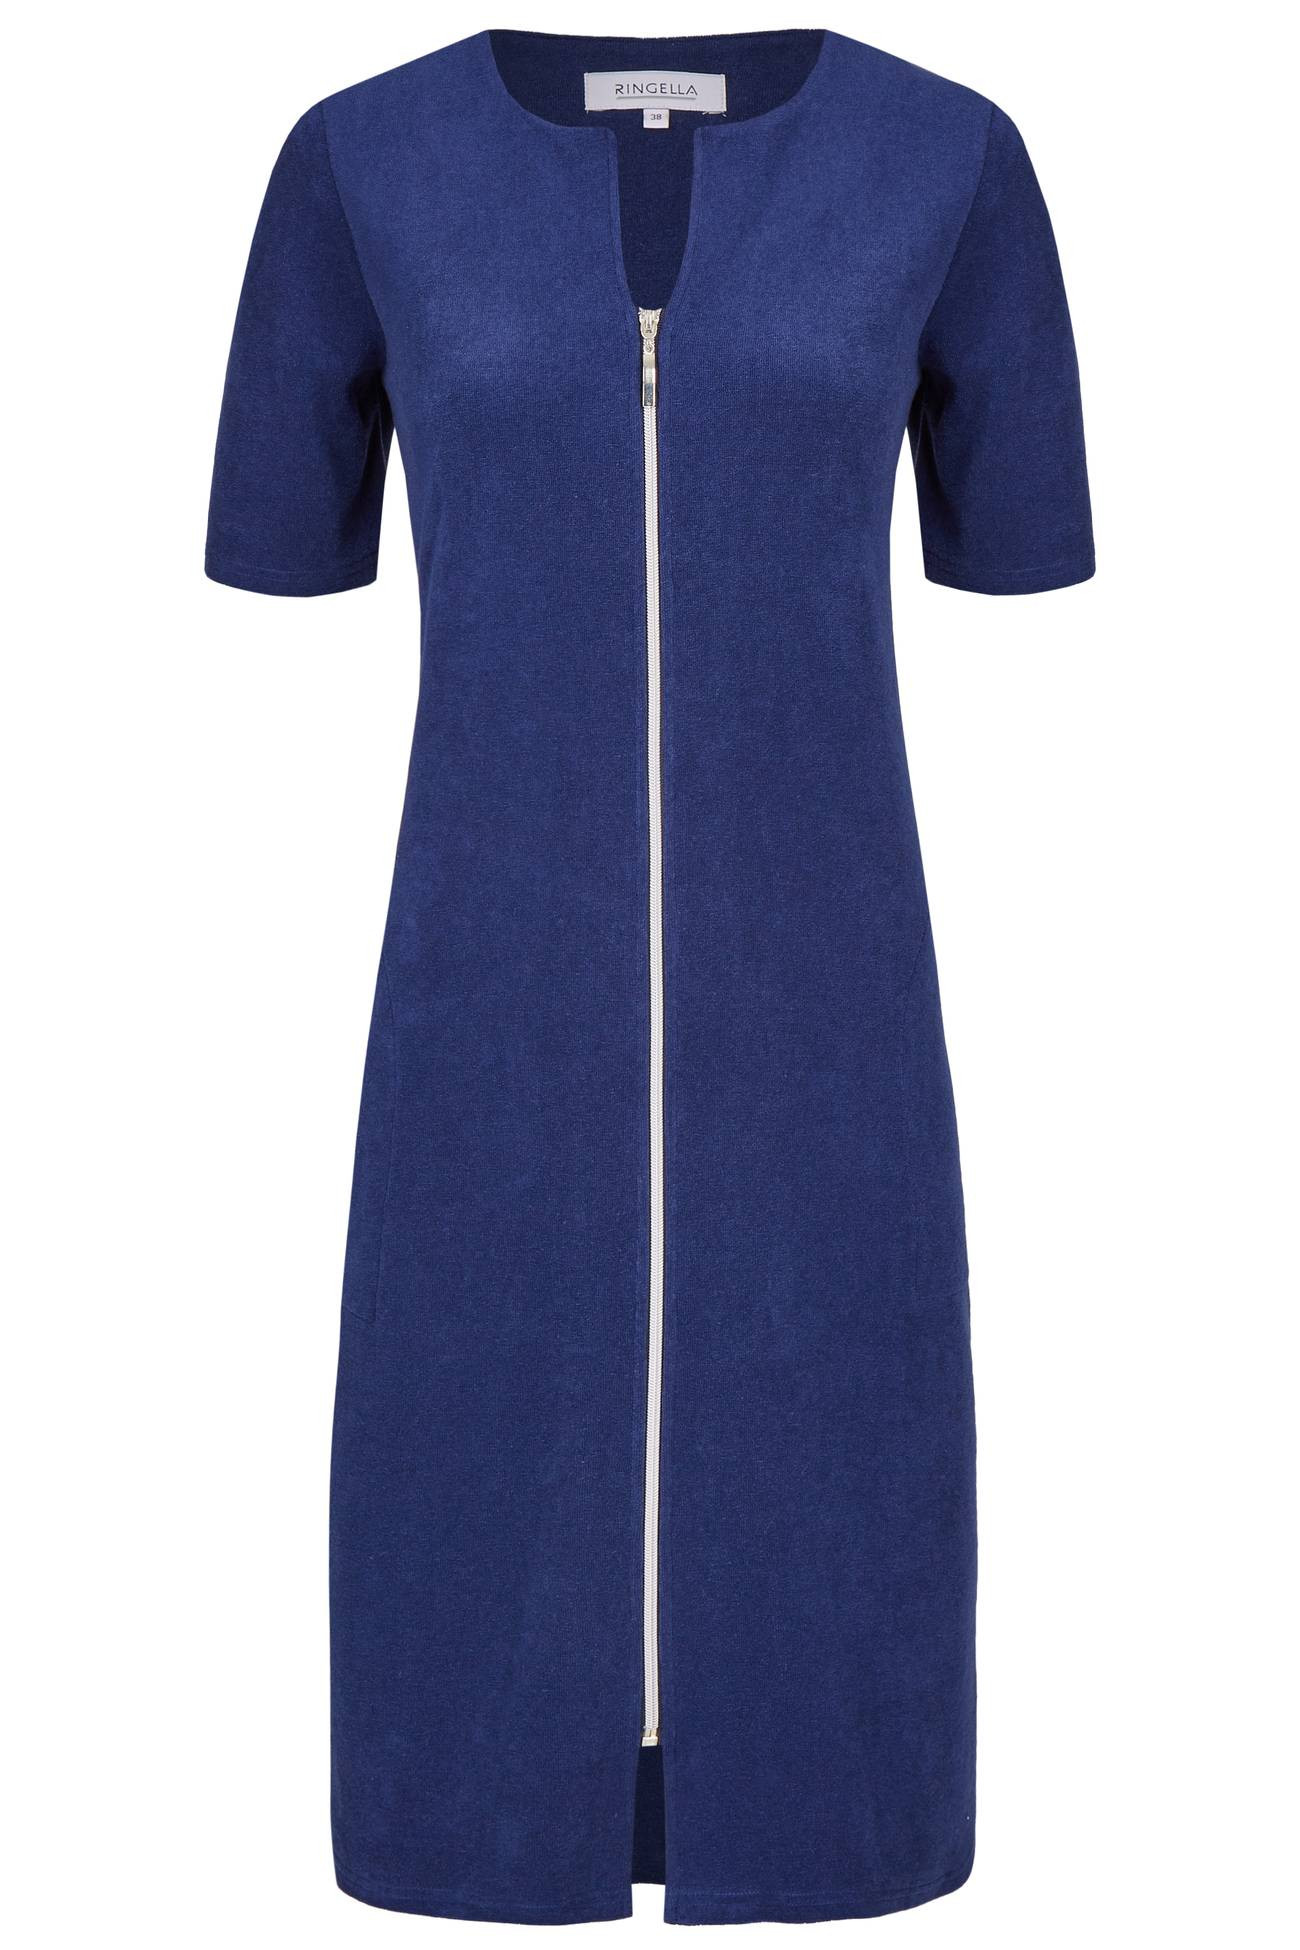 Ringella Damen Frottee Kleid Strandkleid Hauskleid Reißverschluss marine Blau Gr. 36 38 54